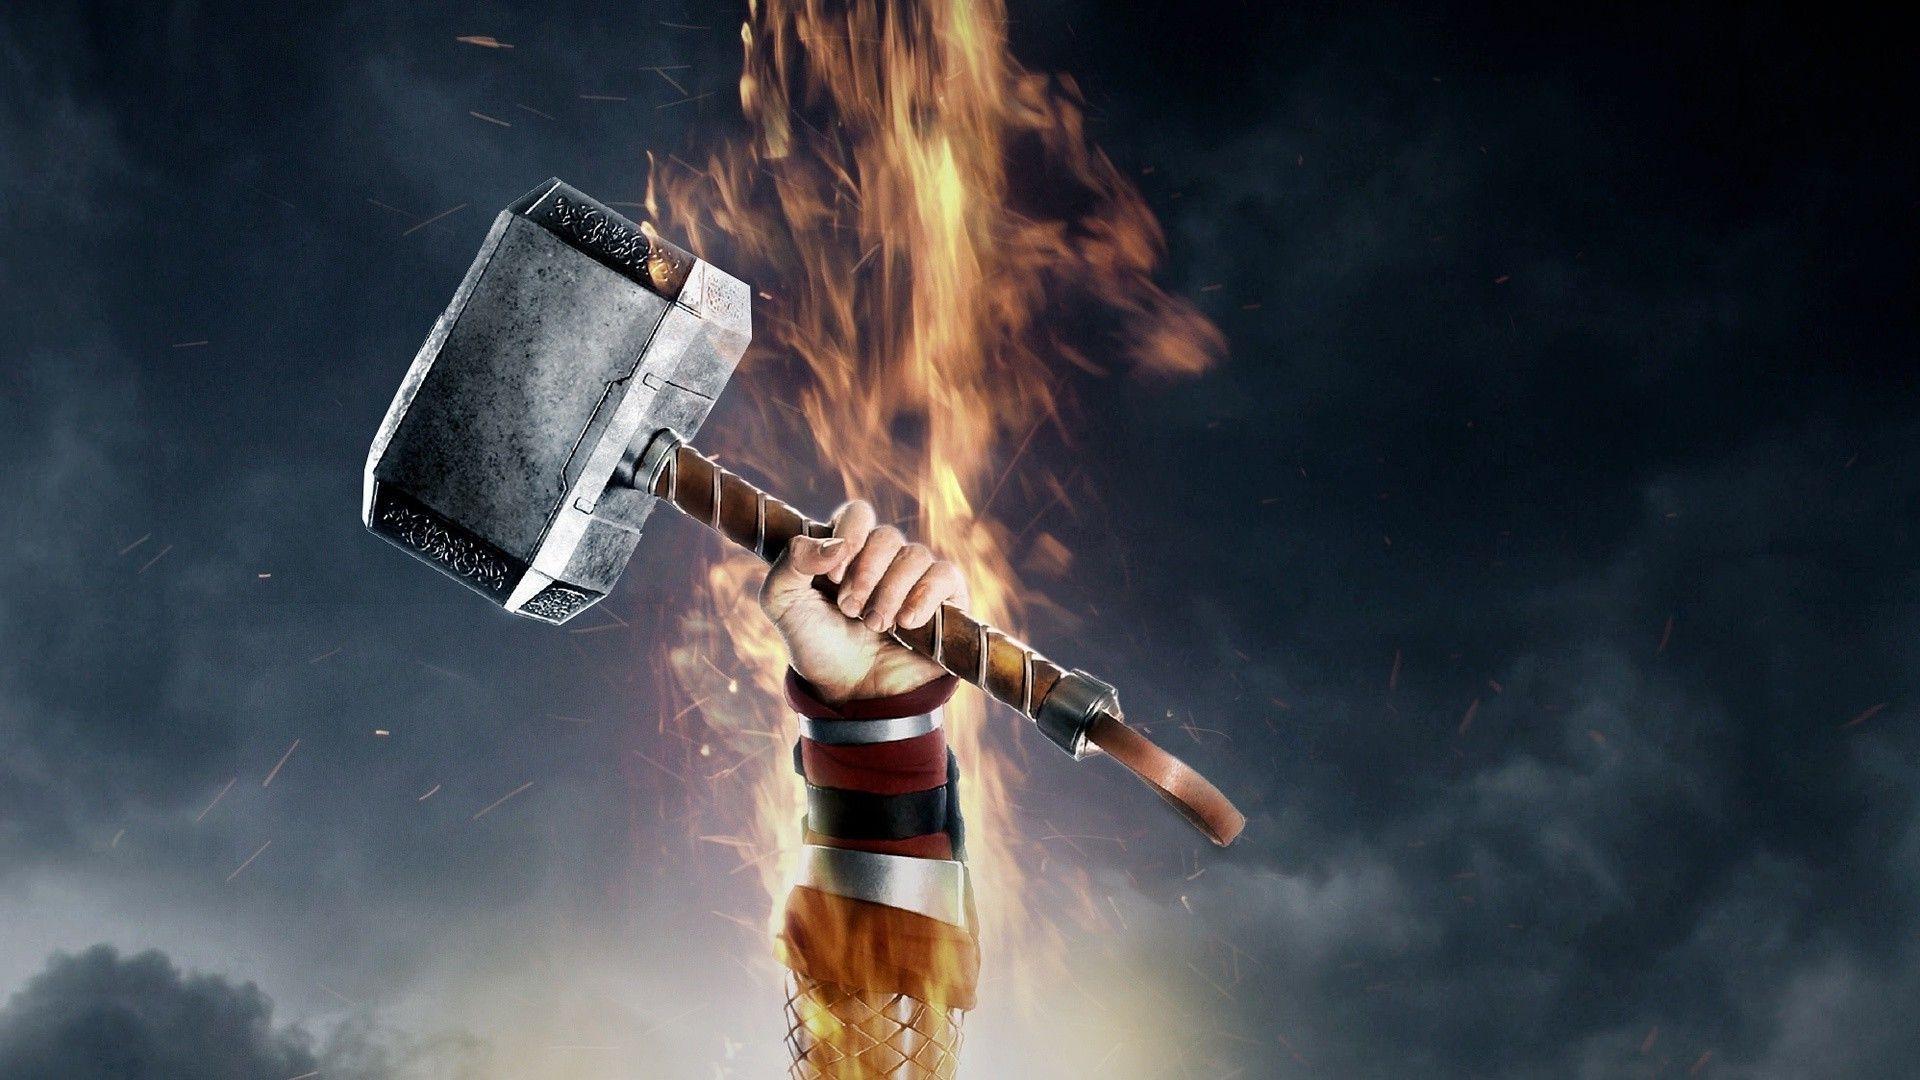 Mjolnir / Martelo do Thor - GOD OF WAR RAGNAROK